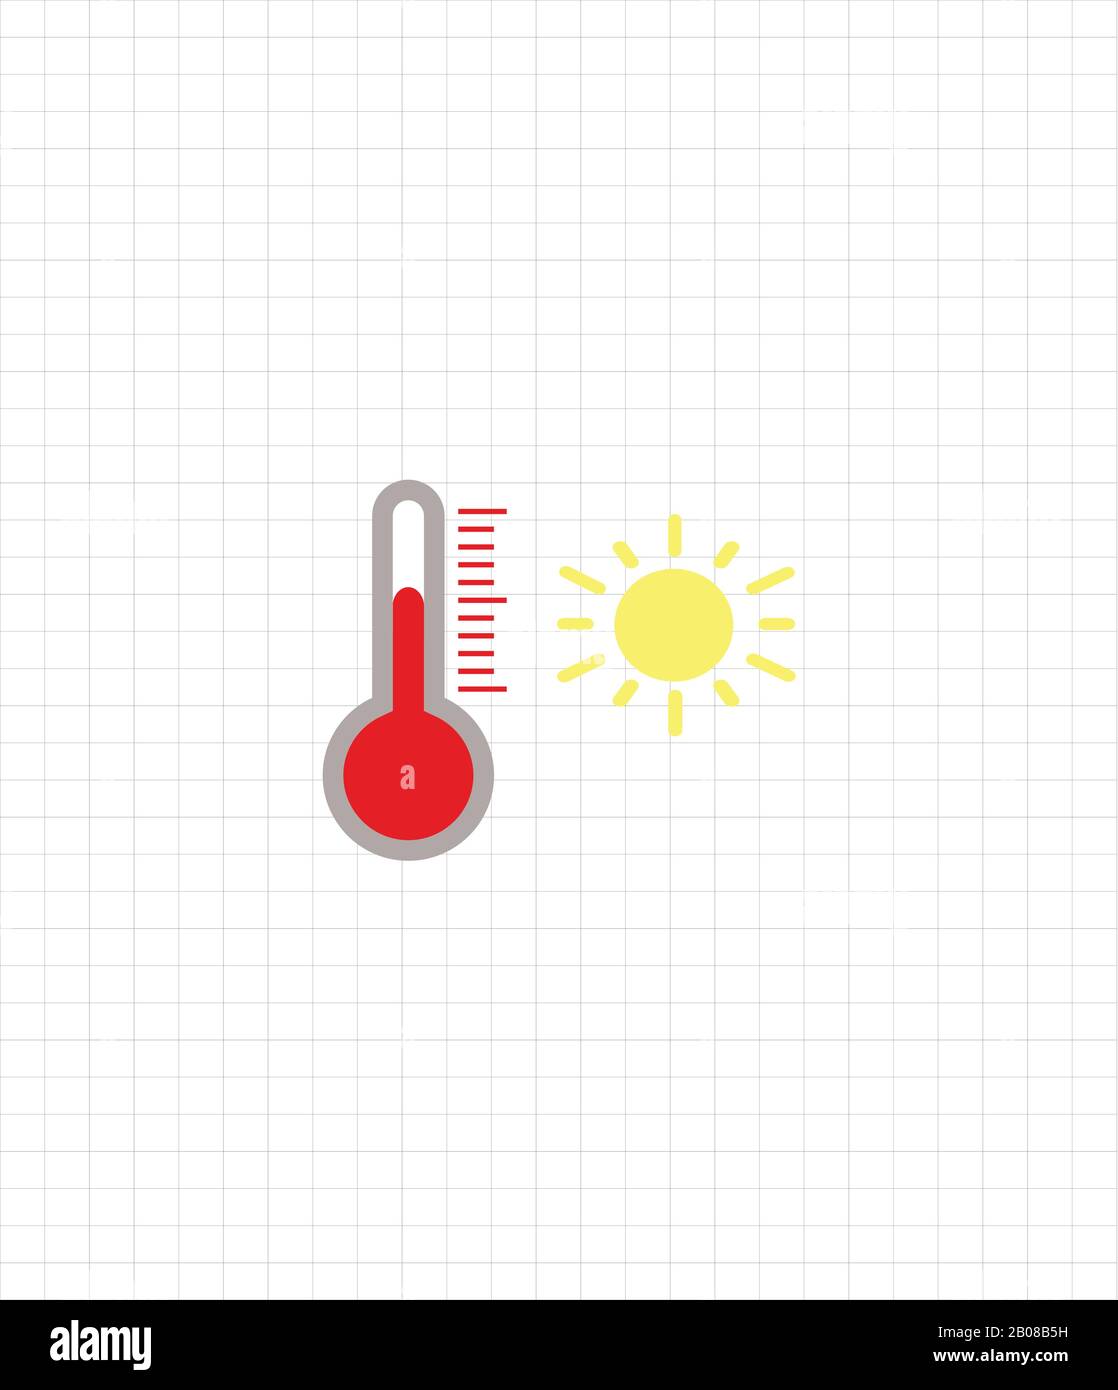 Vektorsymbol Thermometer - Temperatur heiß. Wettervorhersage flaches Design Stock Vektor